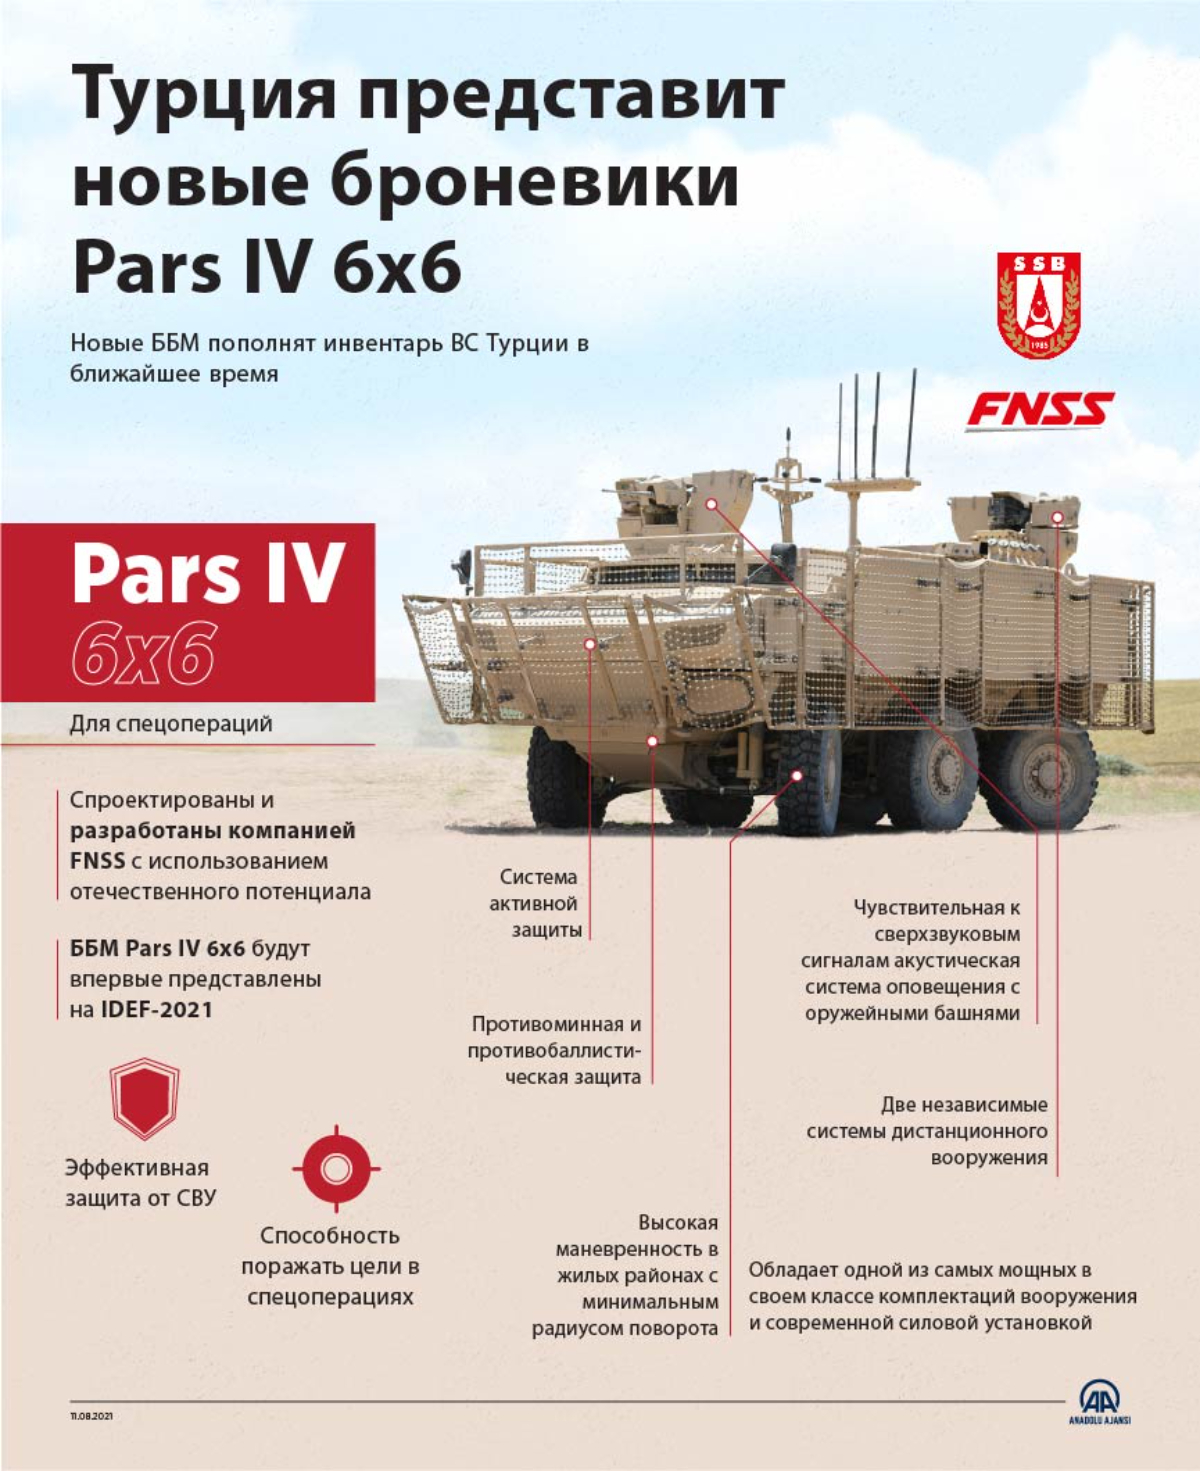 Турция представит новые броневики Pars IV 6x6